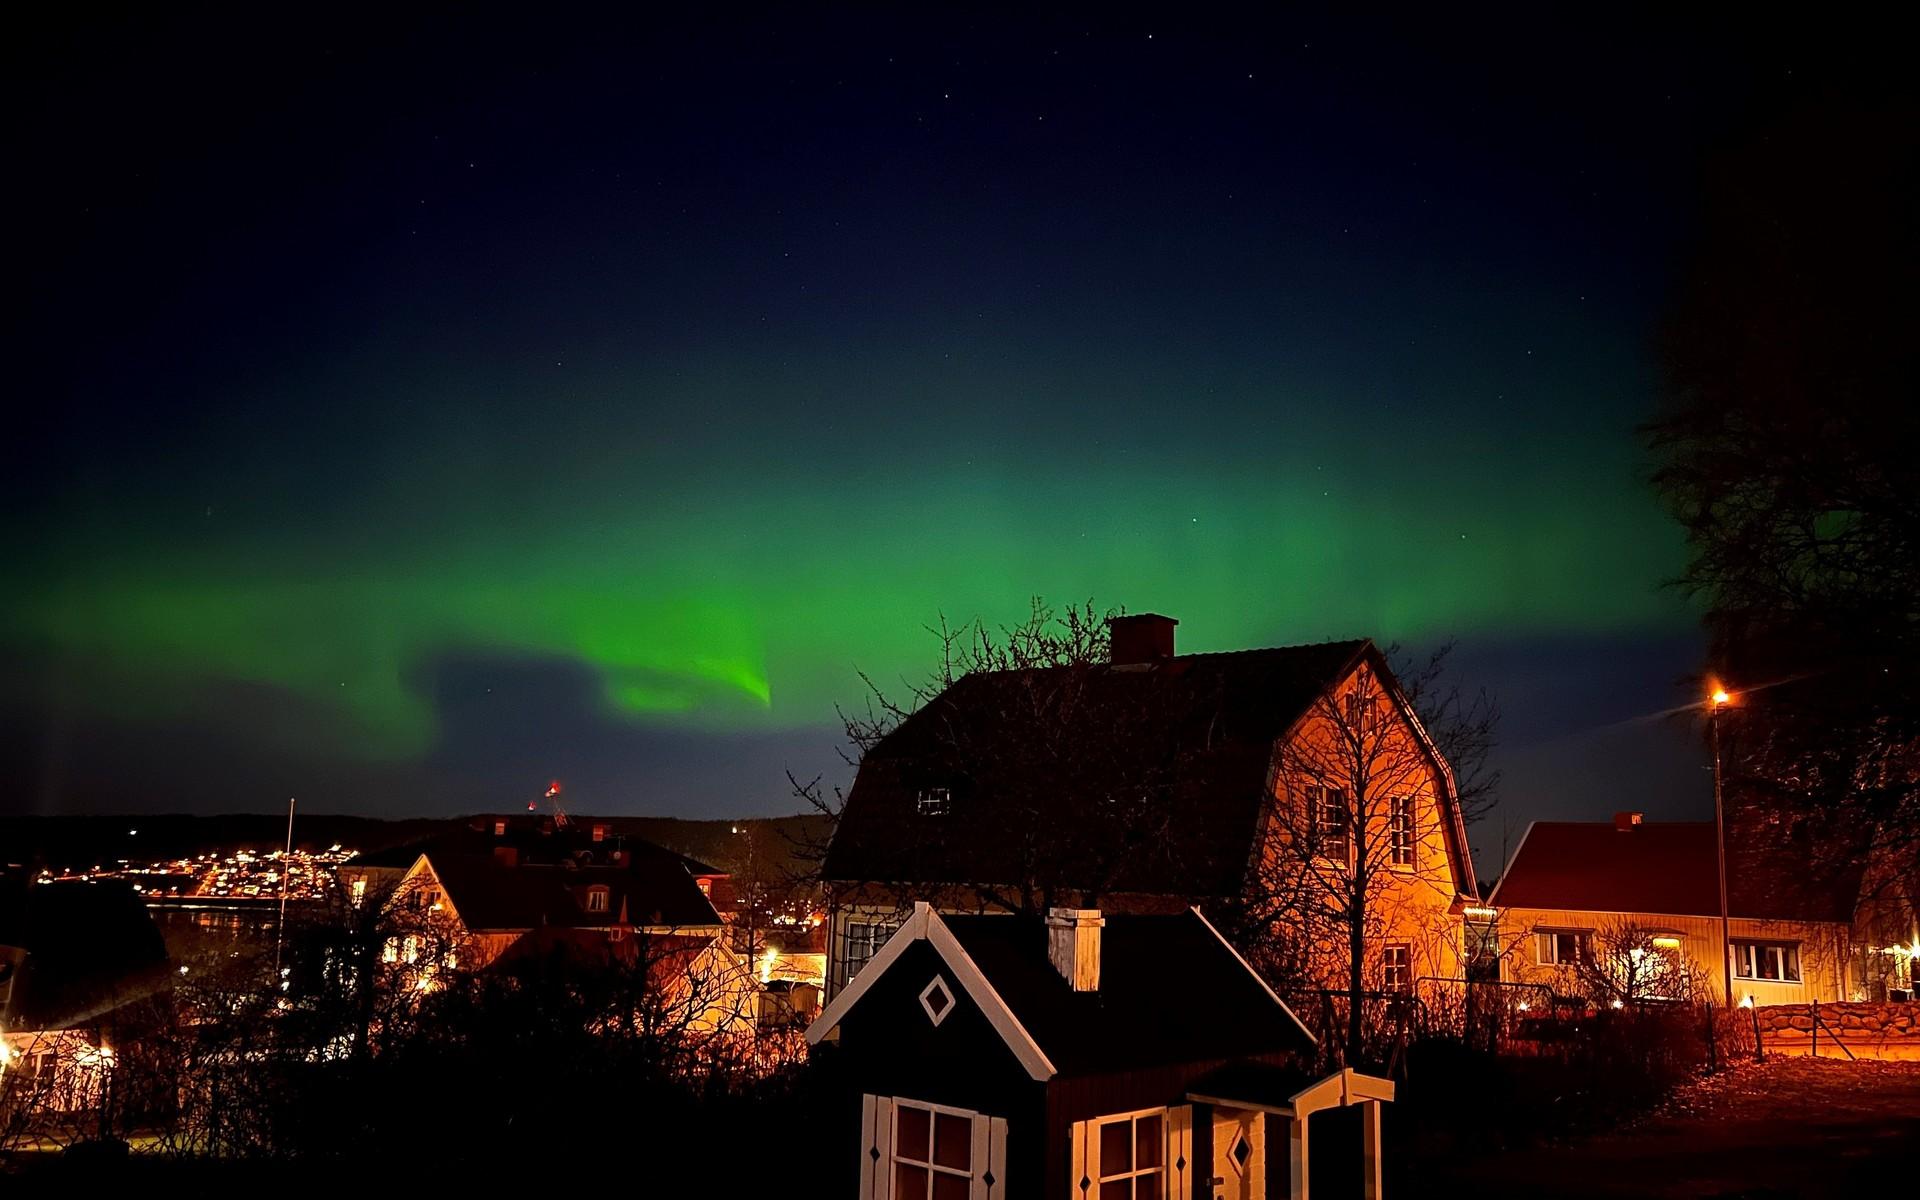 I lördagsnatt tog Catarina Coutinho Axelsson den här bilden av himlen i Ulricehamn. ”Helt magiskt”, skriver hon.